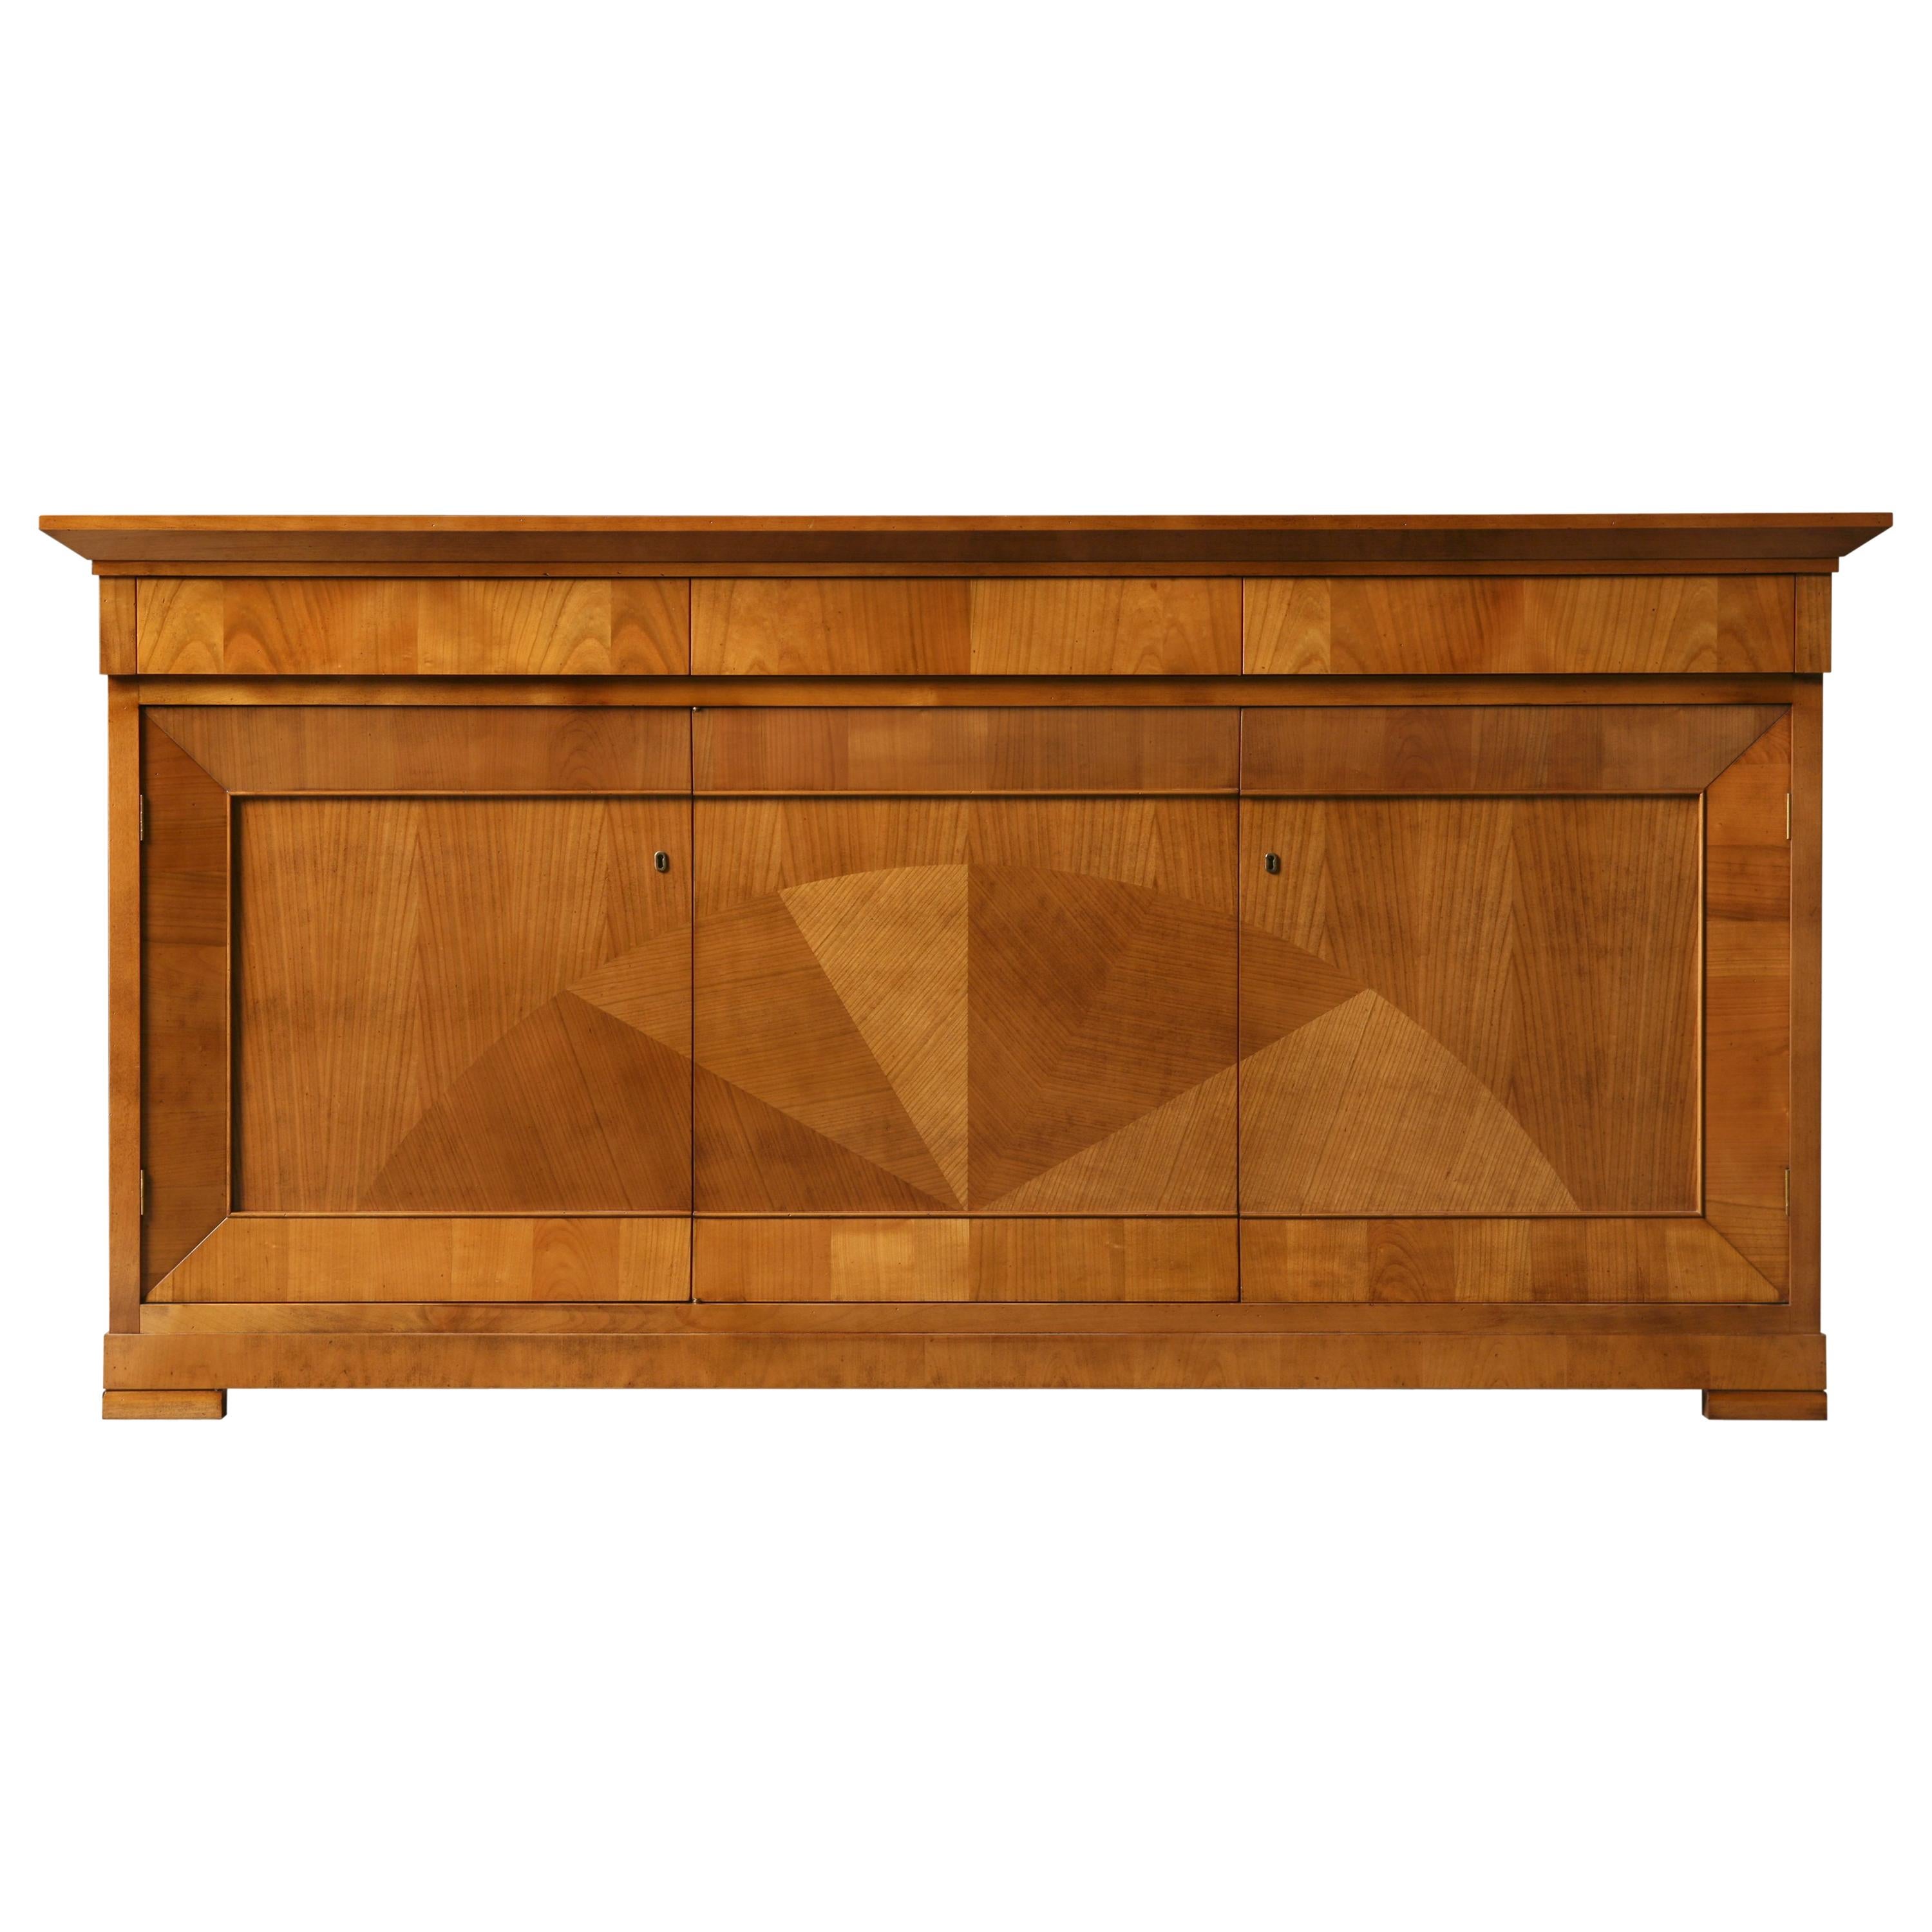 Sideboard in Biedermeier Style, Made of Cherry Wood